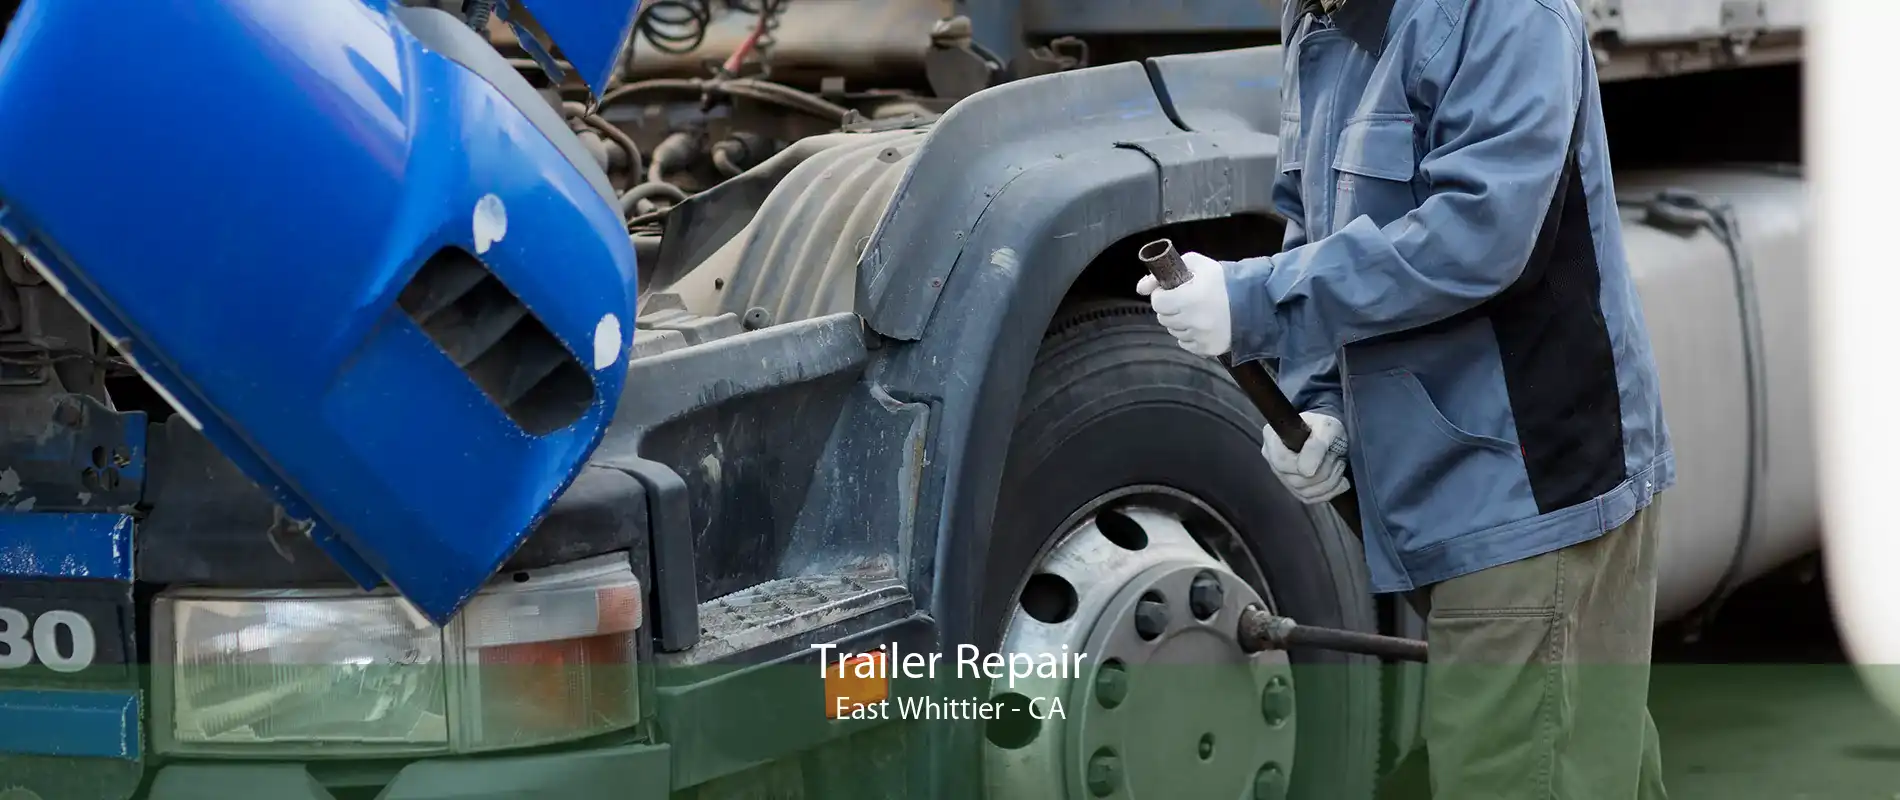 Trailer Repair East Whittier - CA